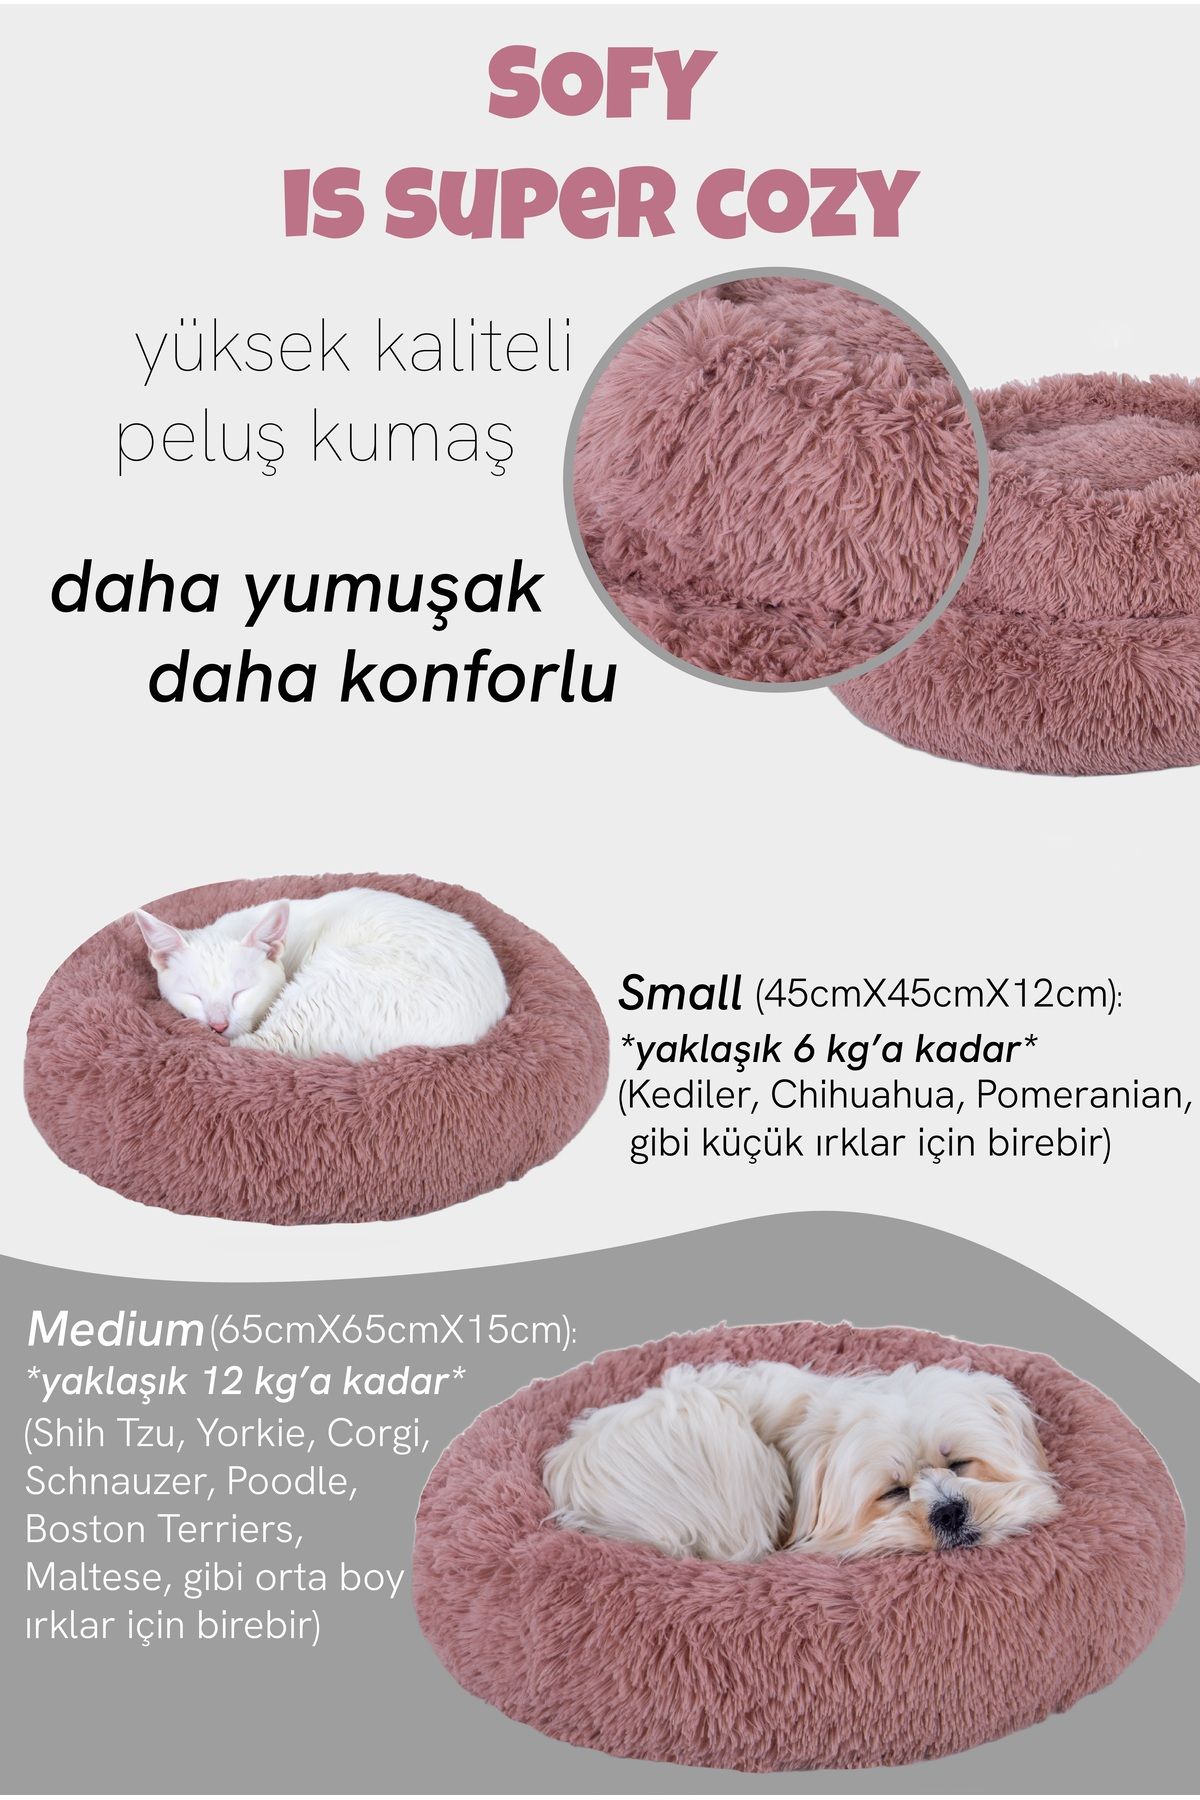 Jungolica Pet Products Sofy, Donut Şeklinde Sakinleştirici Etkili, Yüksek Kaliteli, Peluş Kedi Ve Köpek Yatağı (GÜL KURUSU)